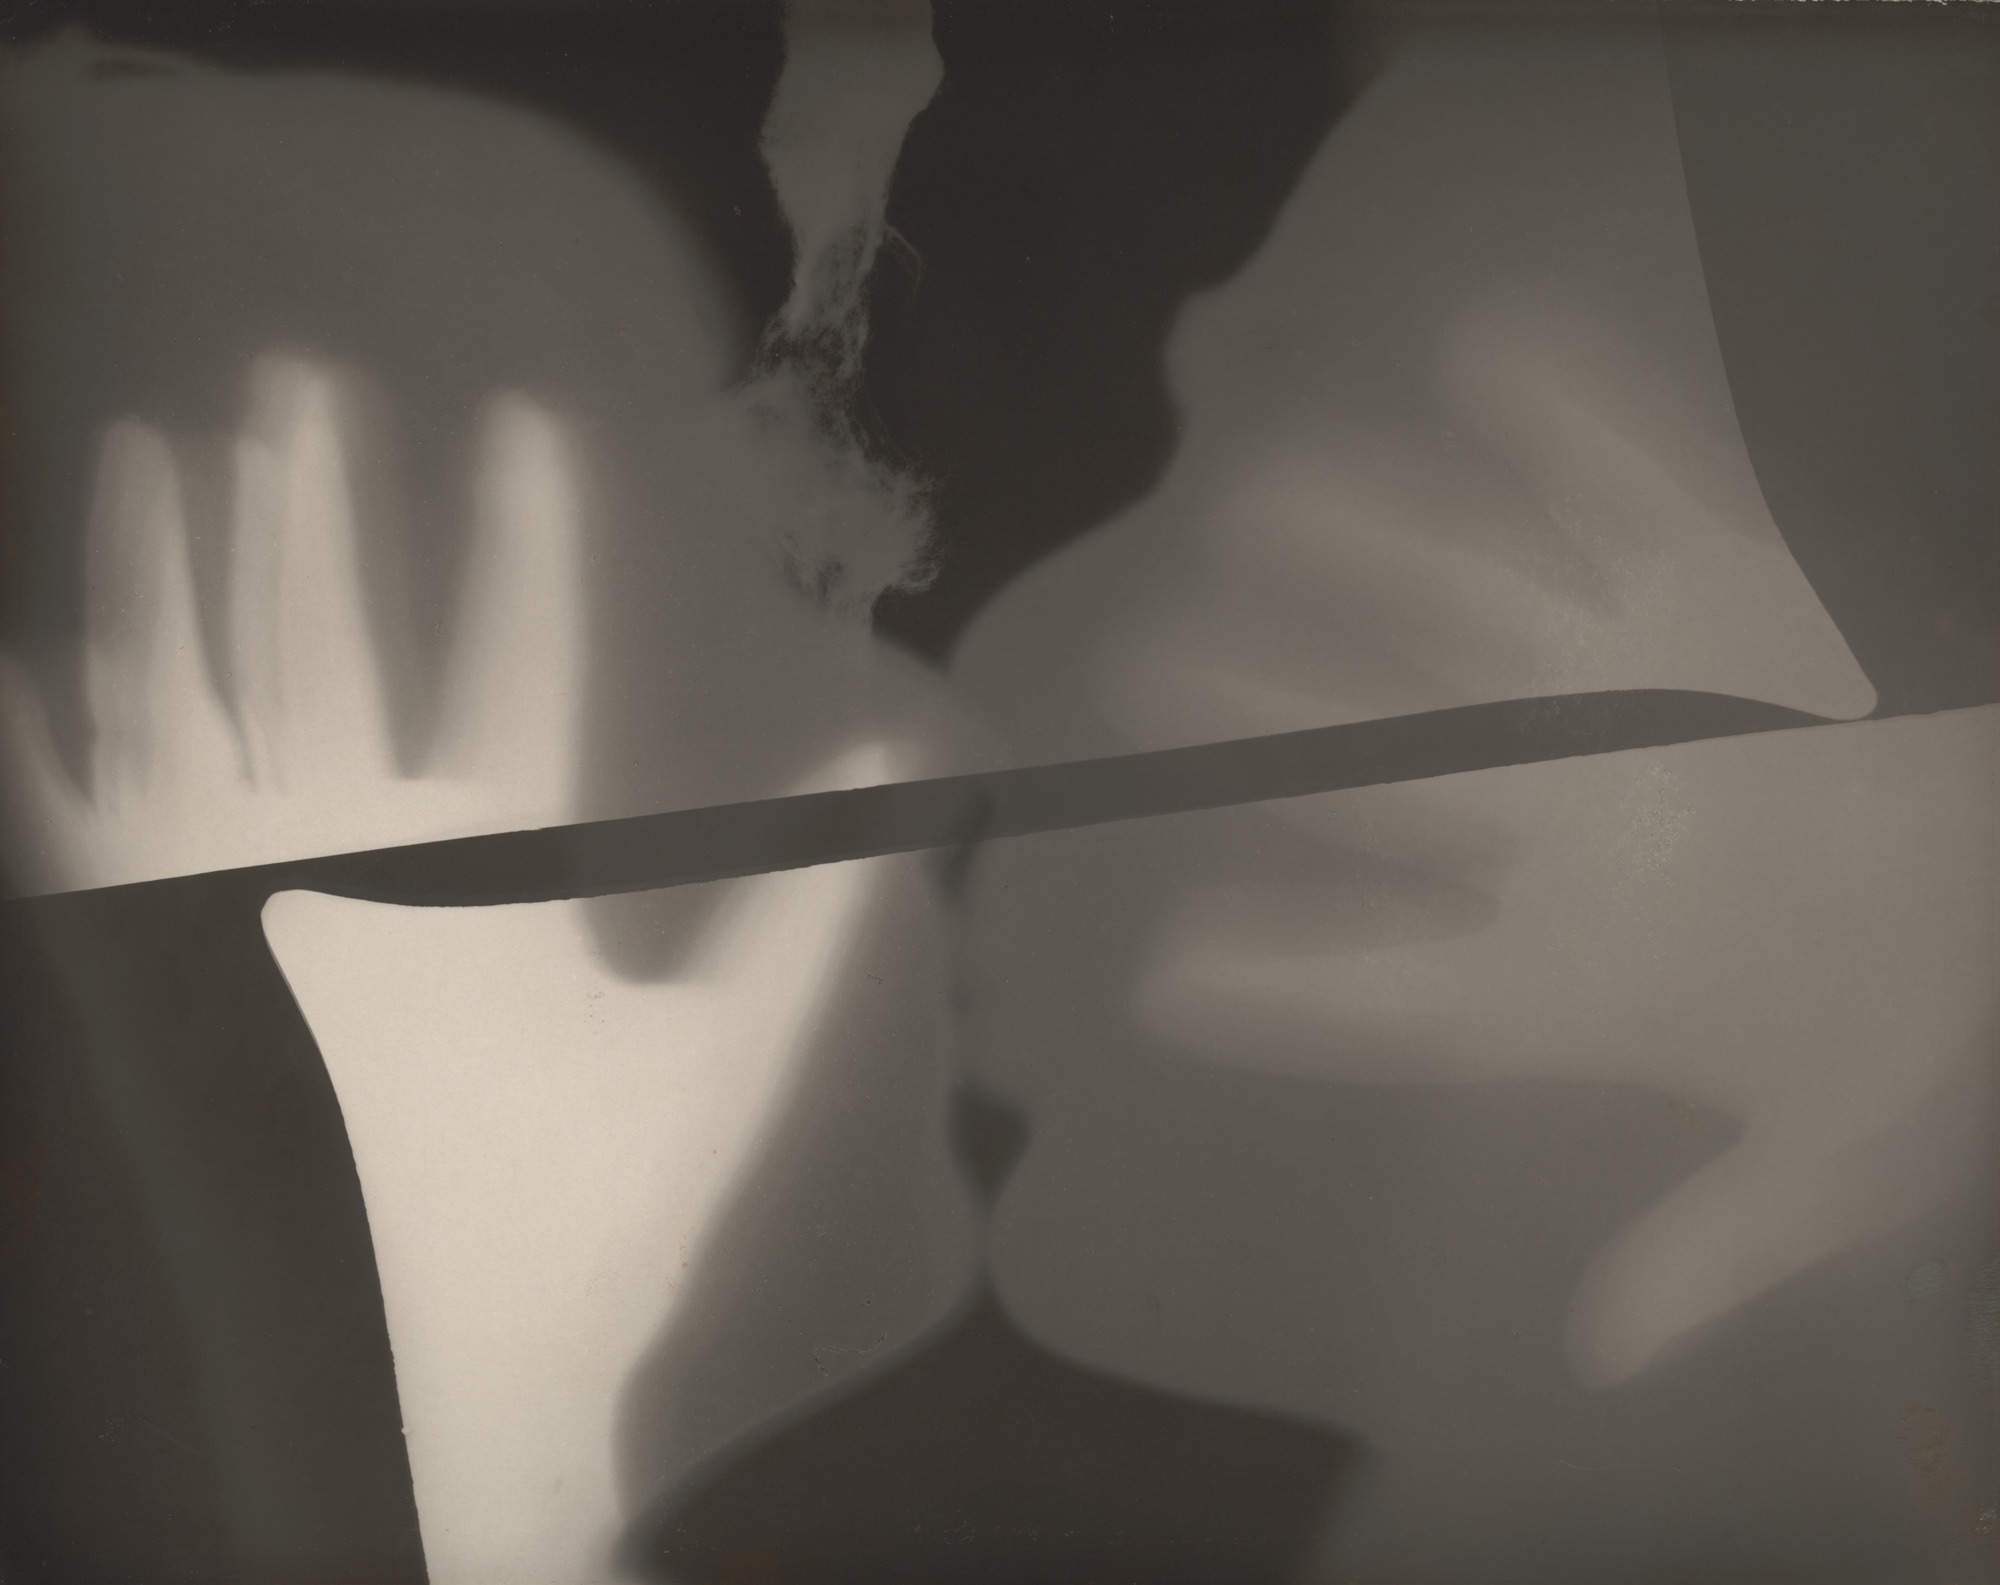 雷氏攝影 (吻) by Man Ray - 1922 - 23.9 x 29.9 厘米 